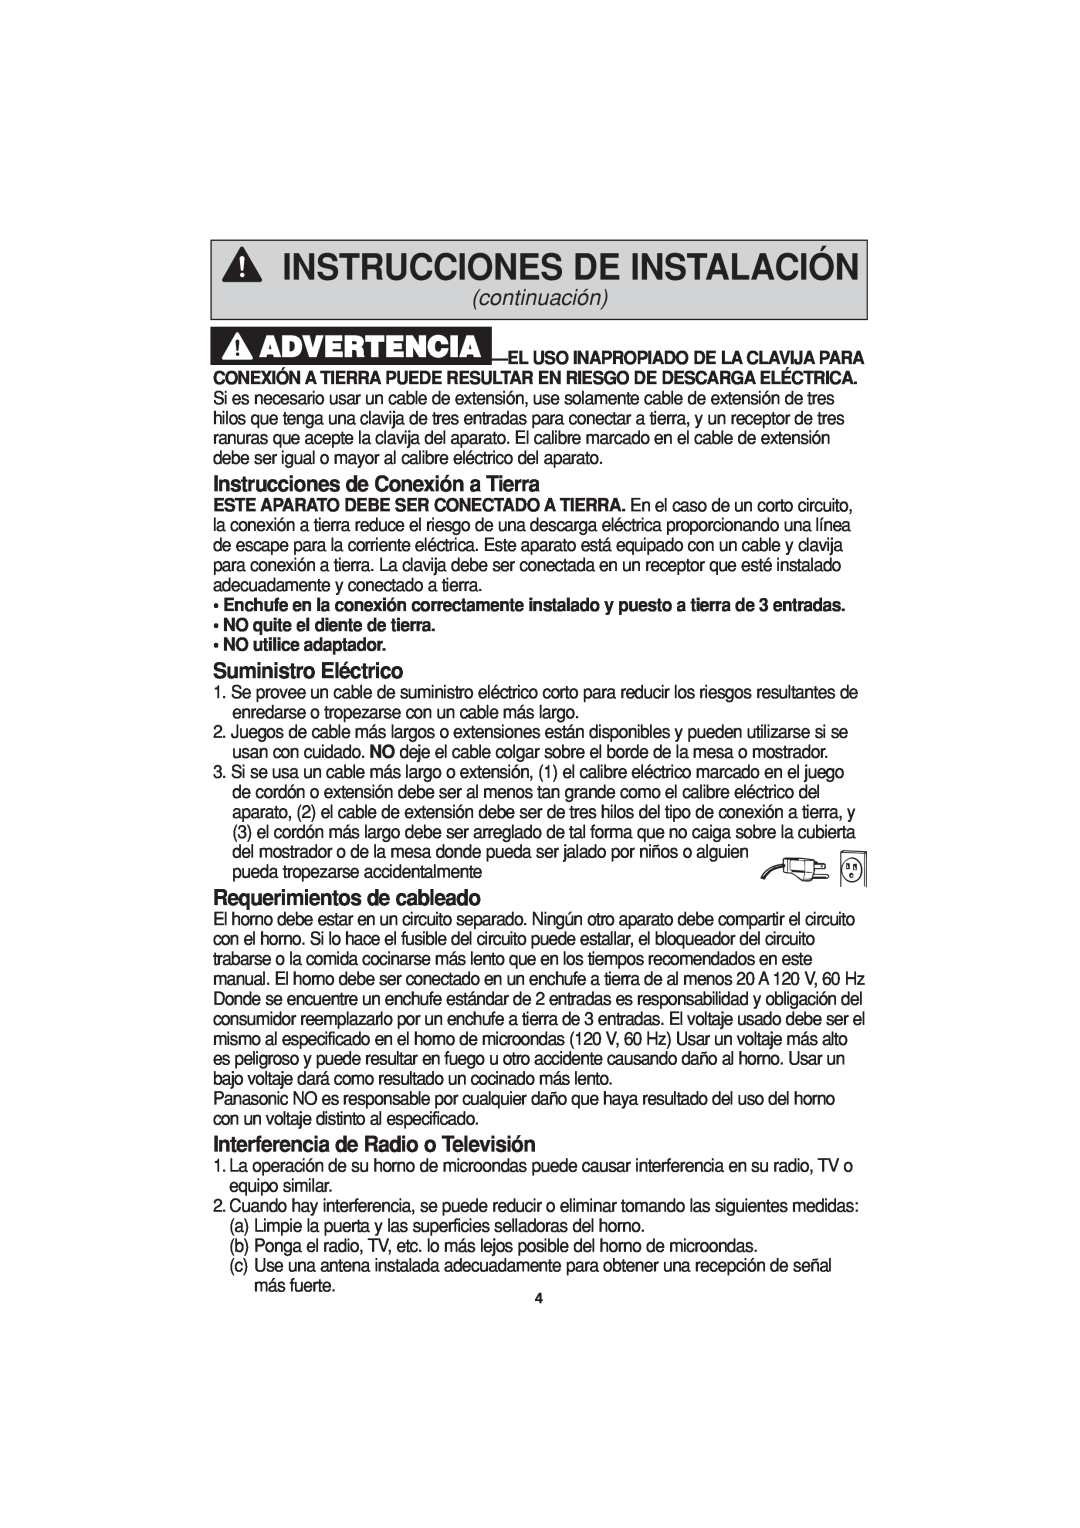 Panasonic NN-T694 Instrucciones de Conexión a Tierra, Suministro Eléctrico, Requerimientos de cableado, continuación 